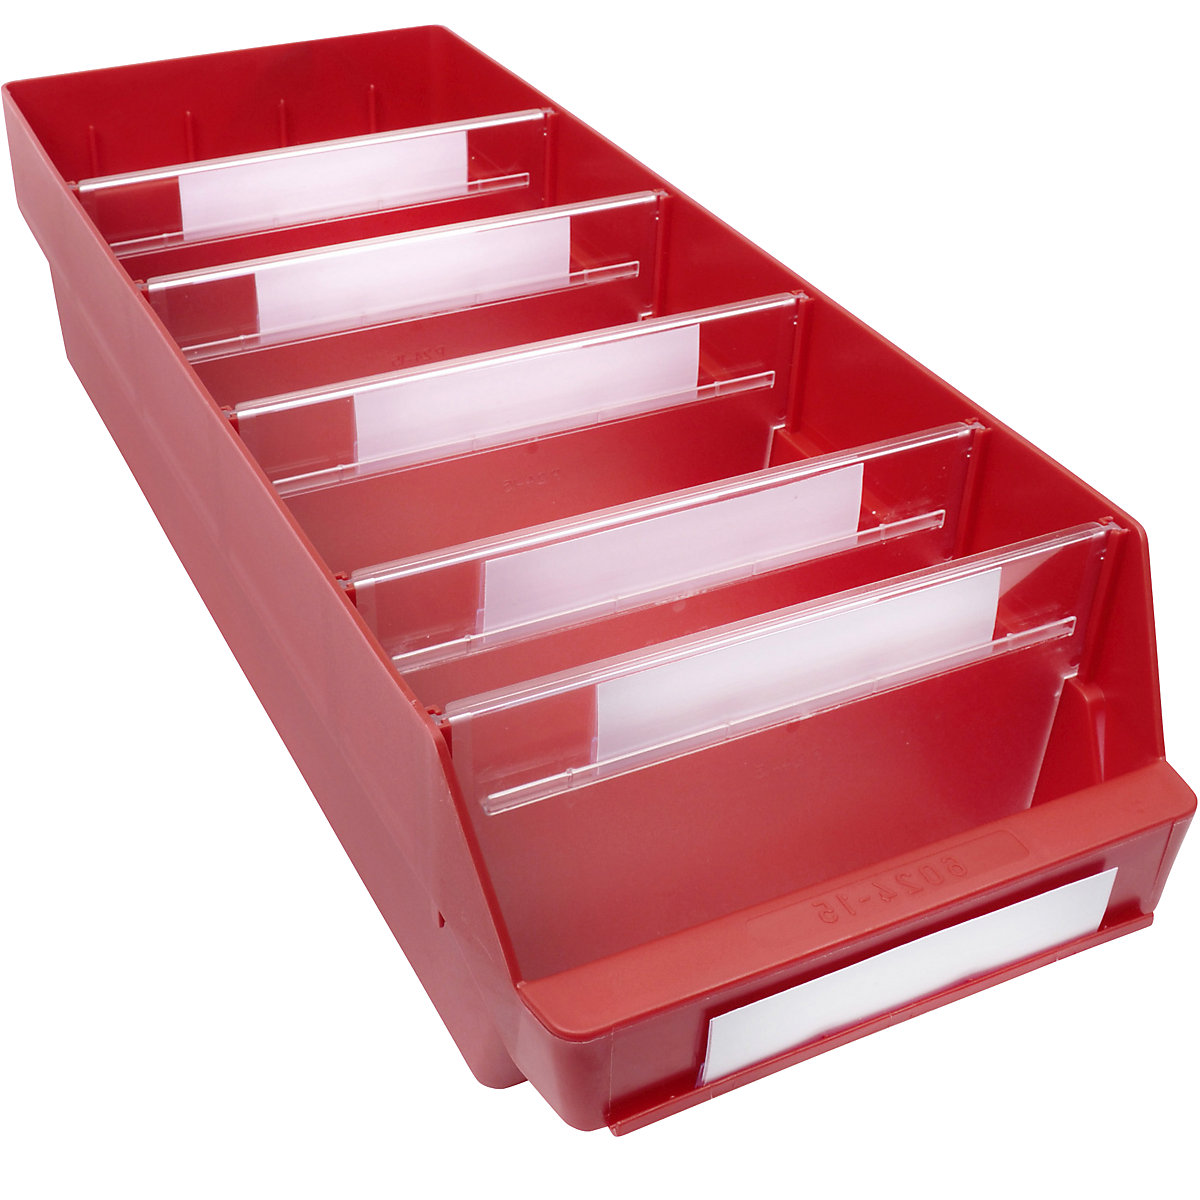 Regalkasten aus hochschlagfestem Polypropylen STEMO, rot, LxBxH 600 x 240 x 150 mm, VE 10 Stk-19